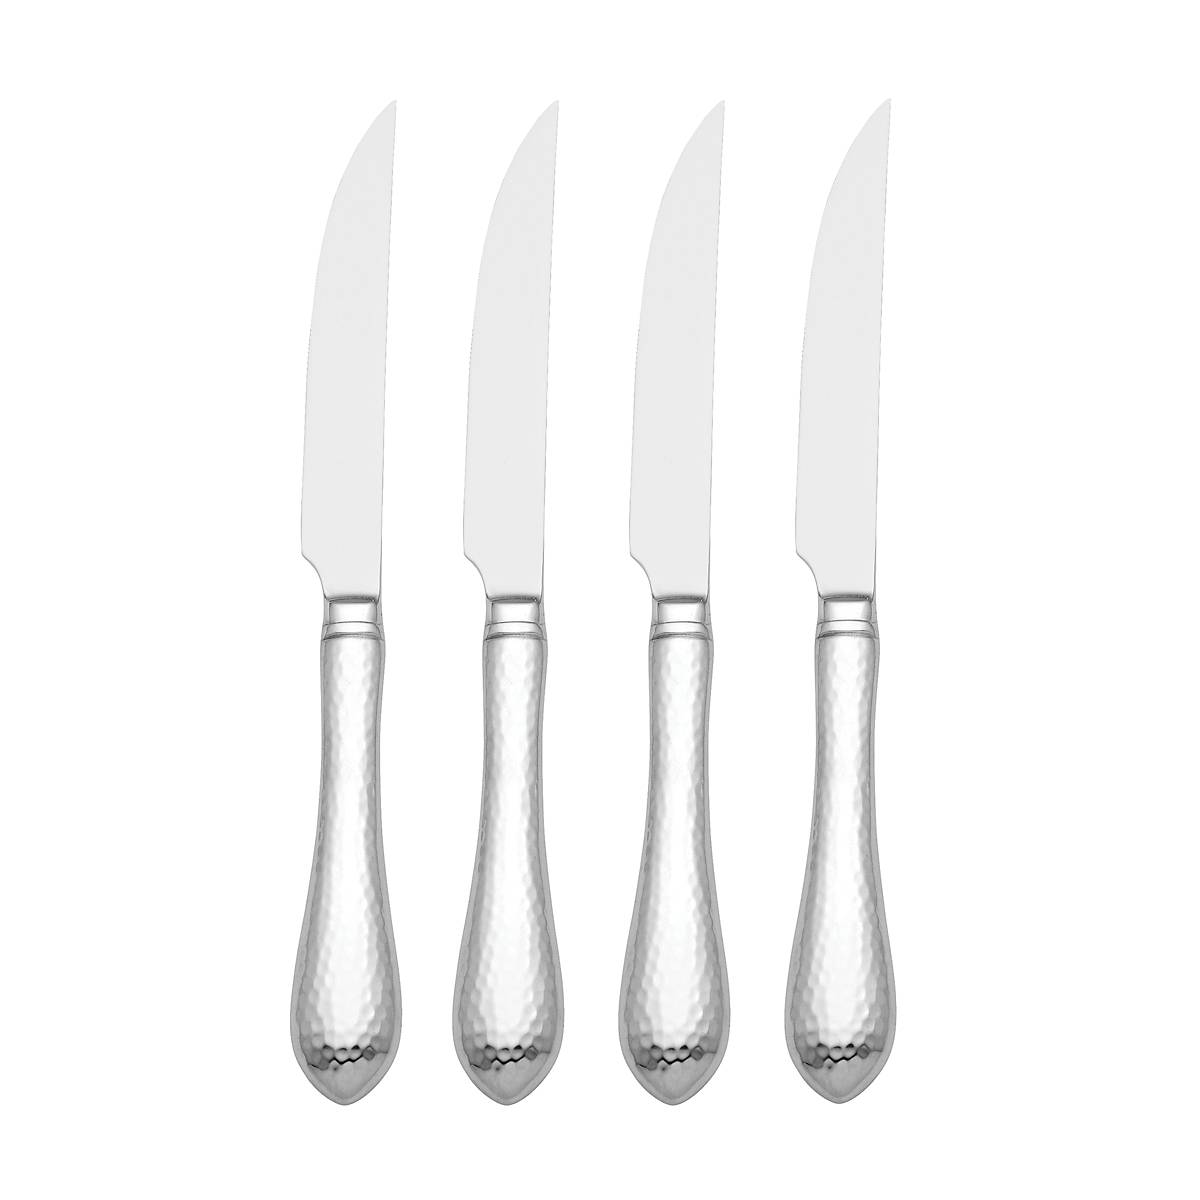 Set of 4 Steak knives “Sirloin” – LEGNOART